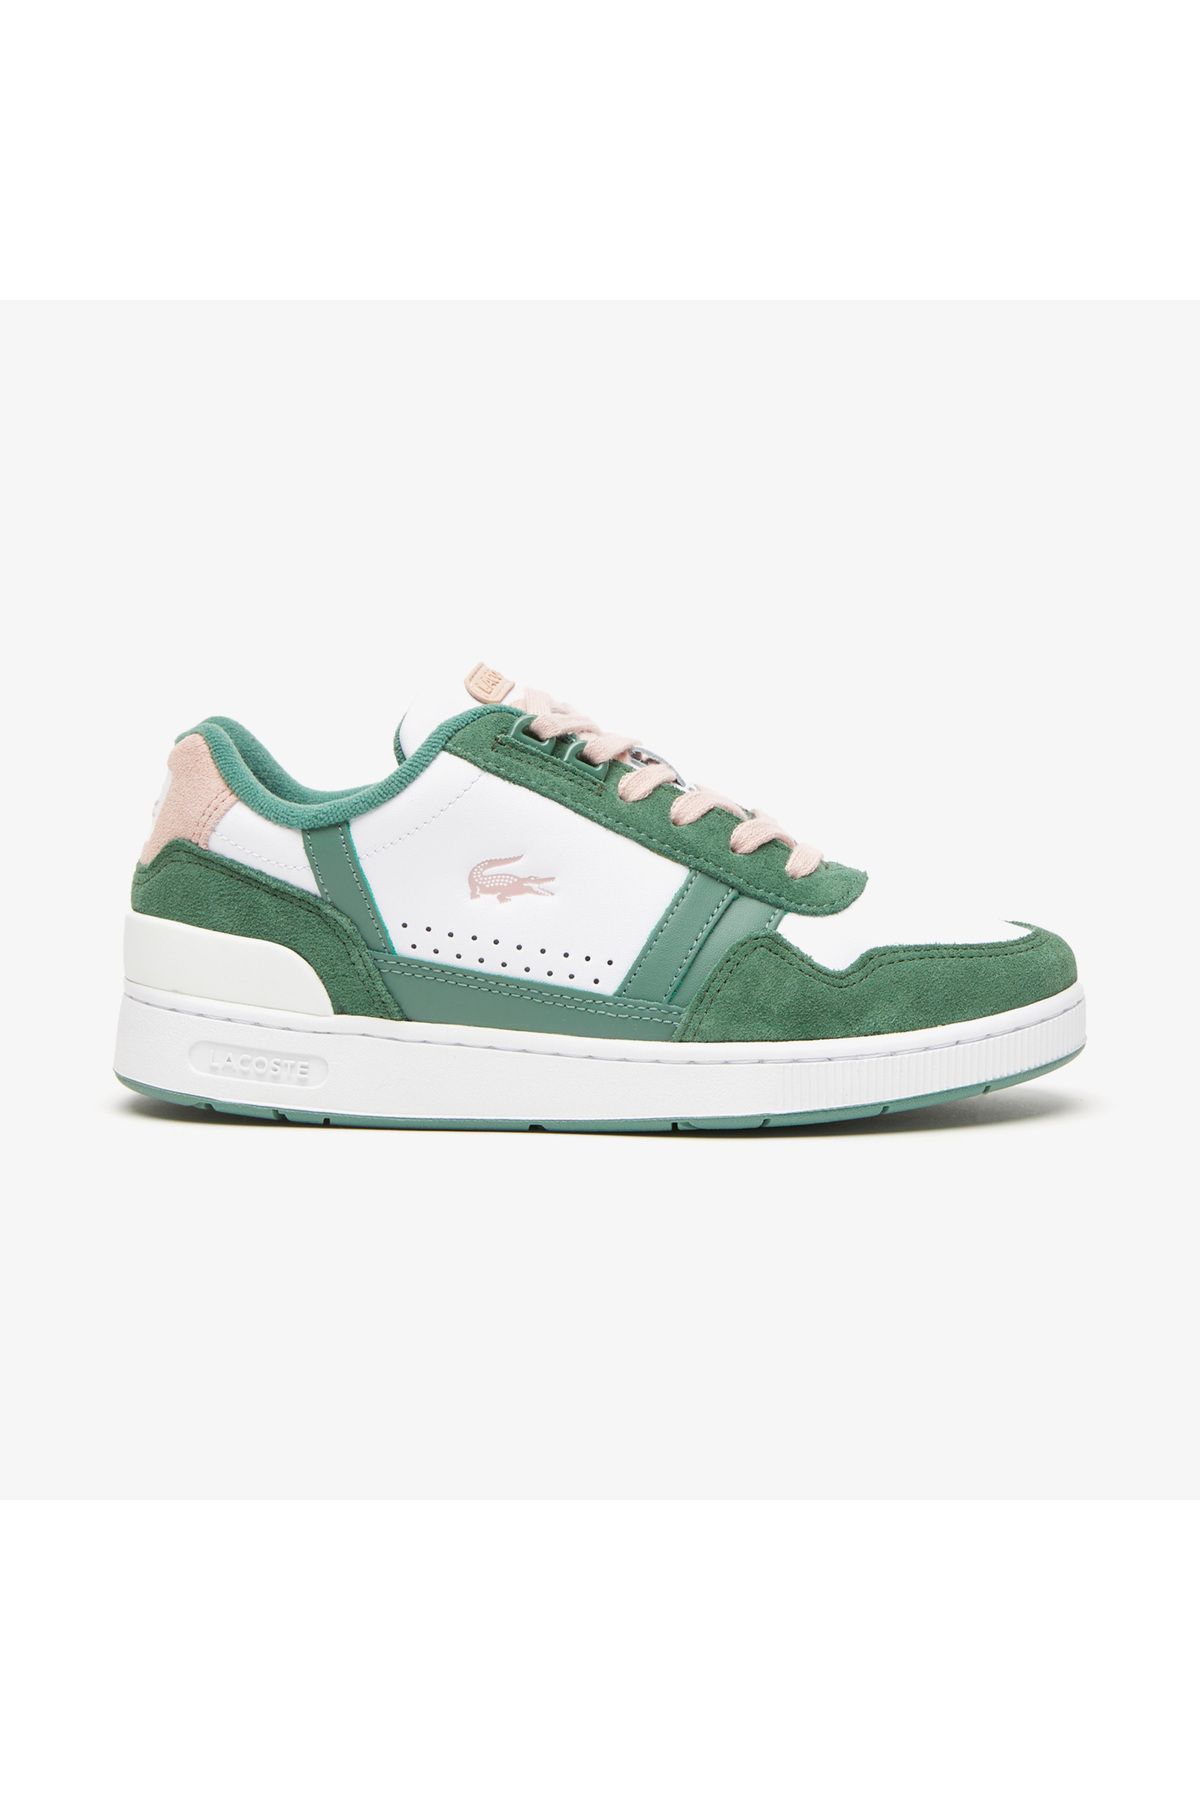 Lacoste T-clip Kadın Yeşil Sneaker